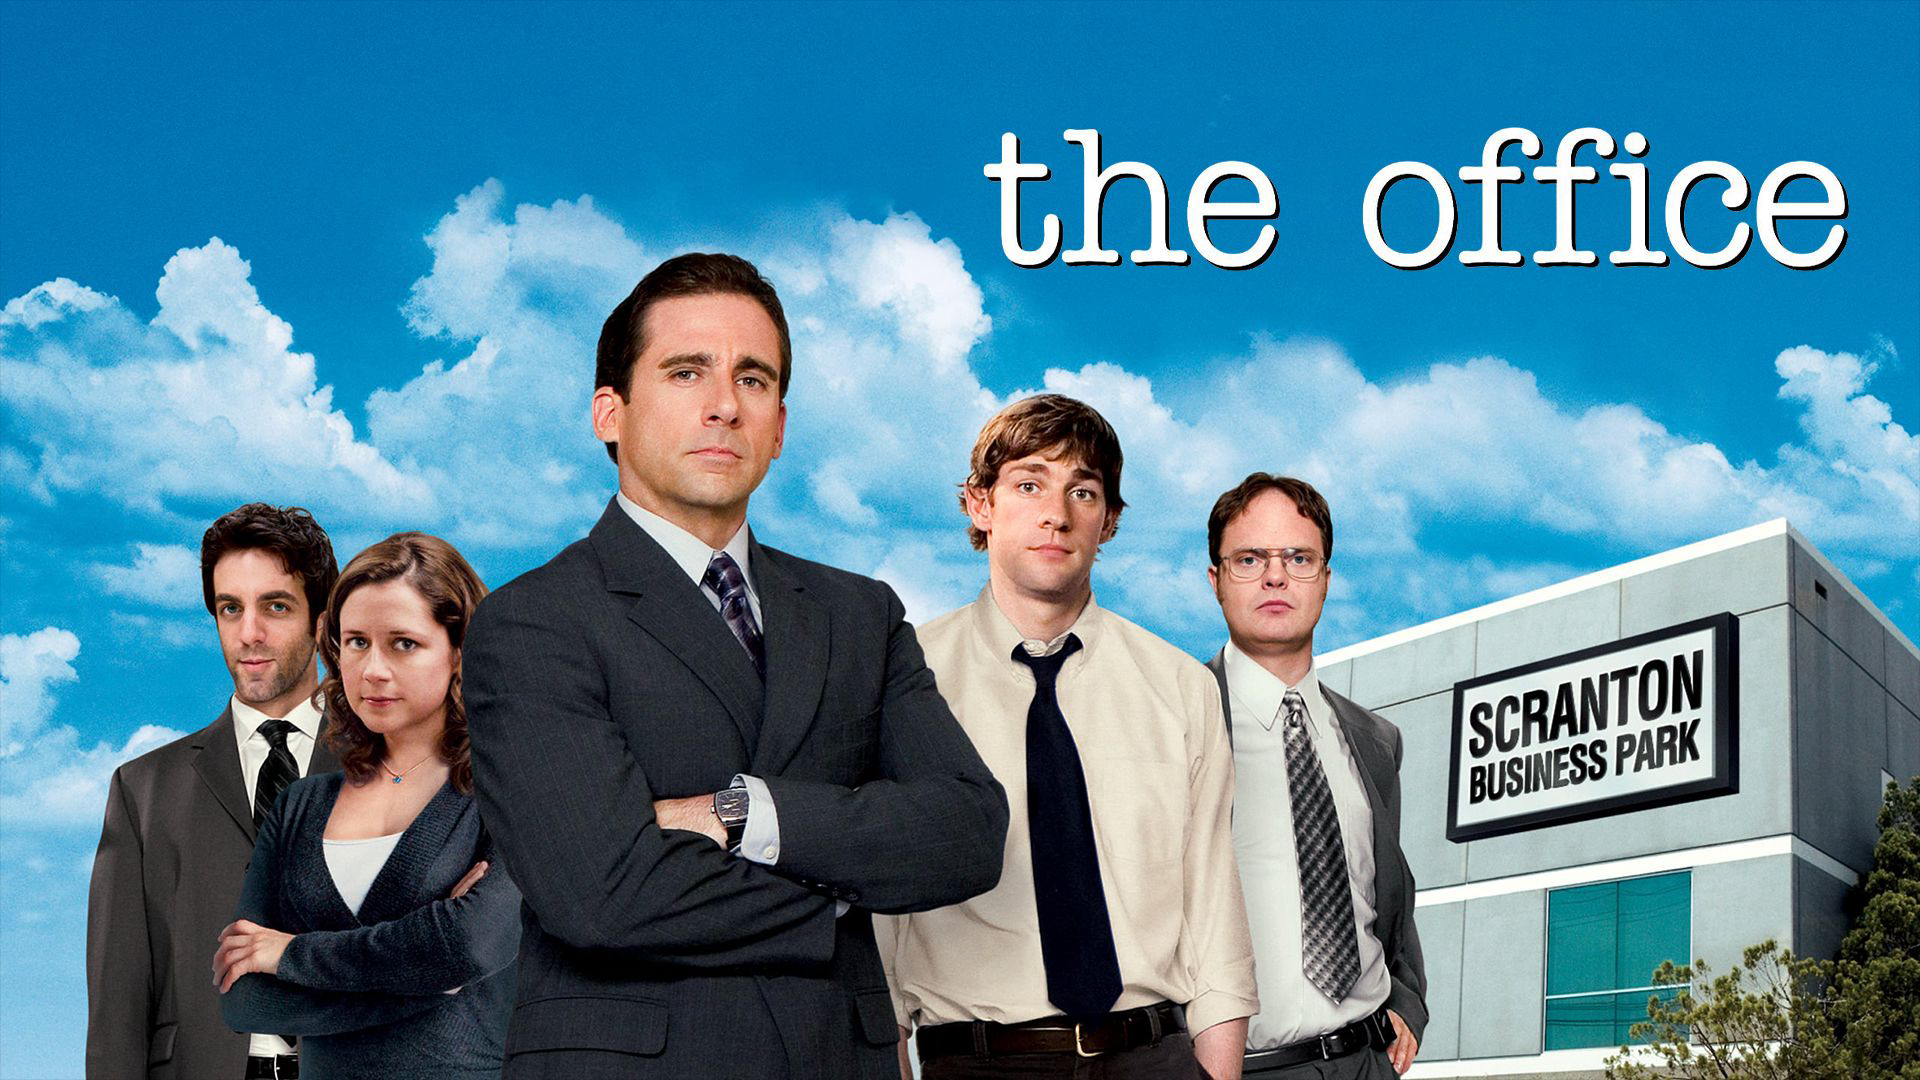 The Office (Season 4) / The Office (Season 4) (2007)